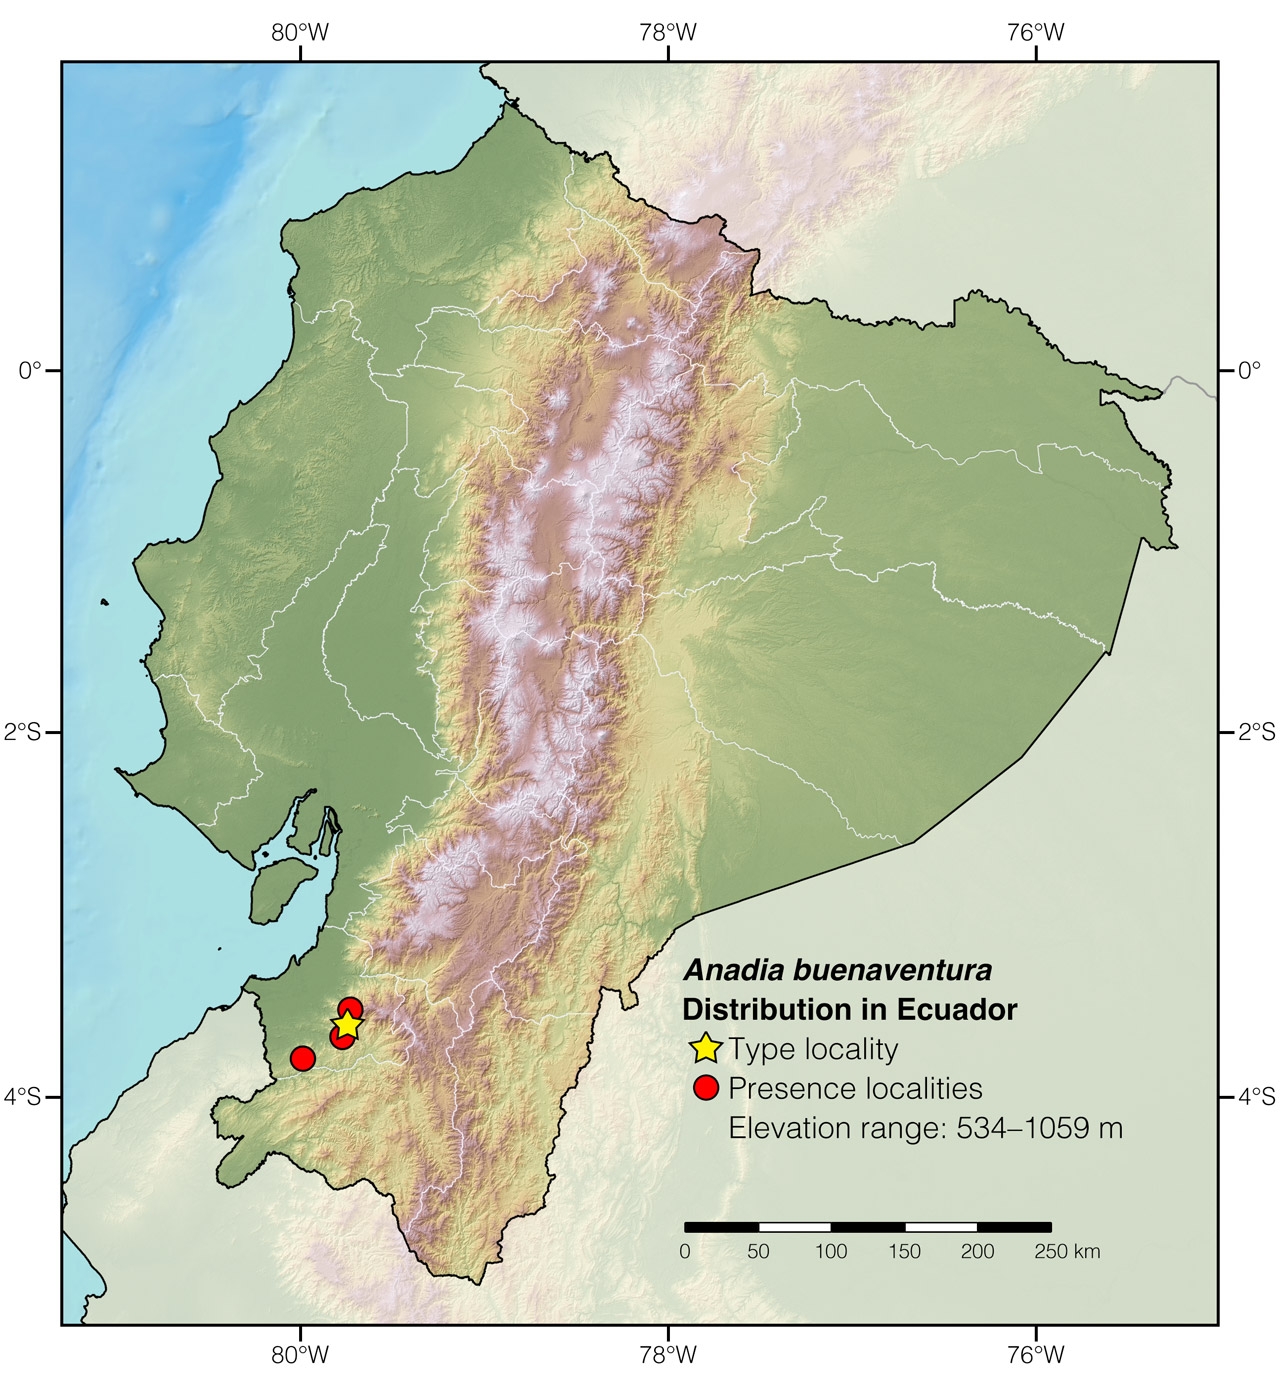 Distribution of Anadia buenaventura in Ecuador